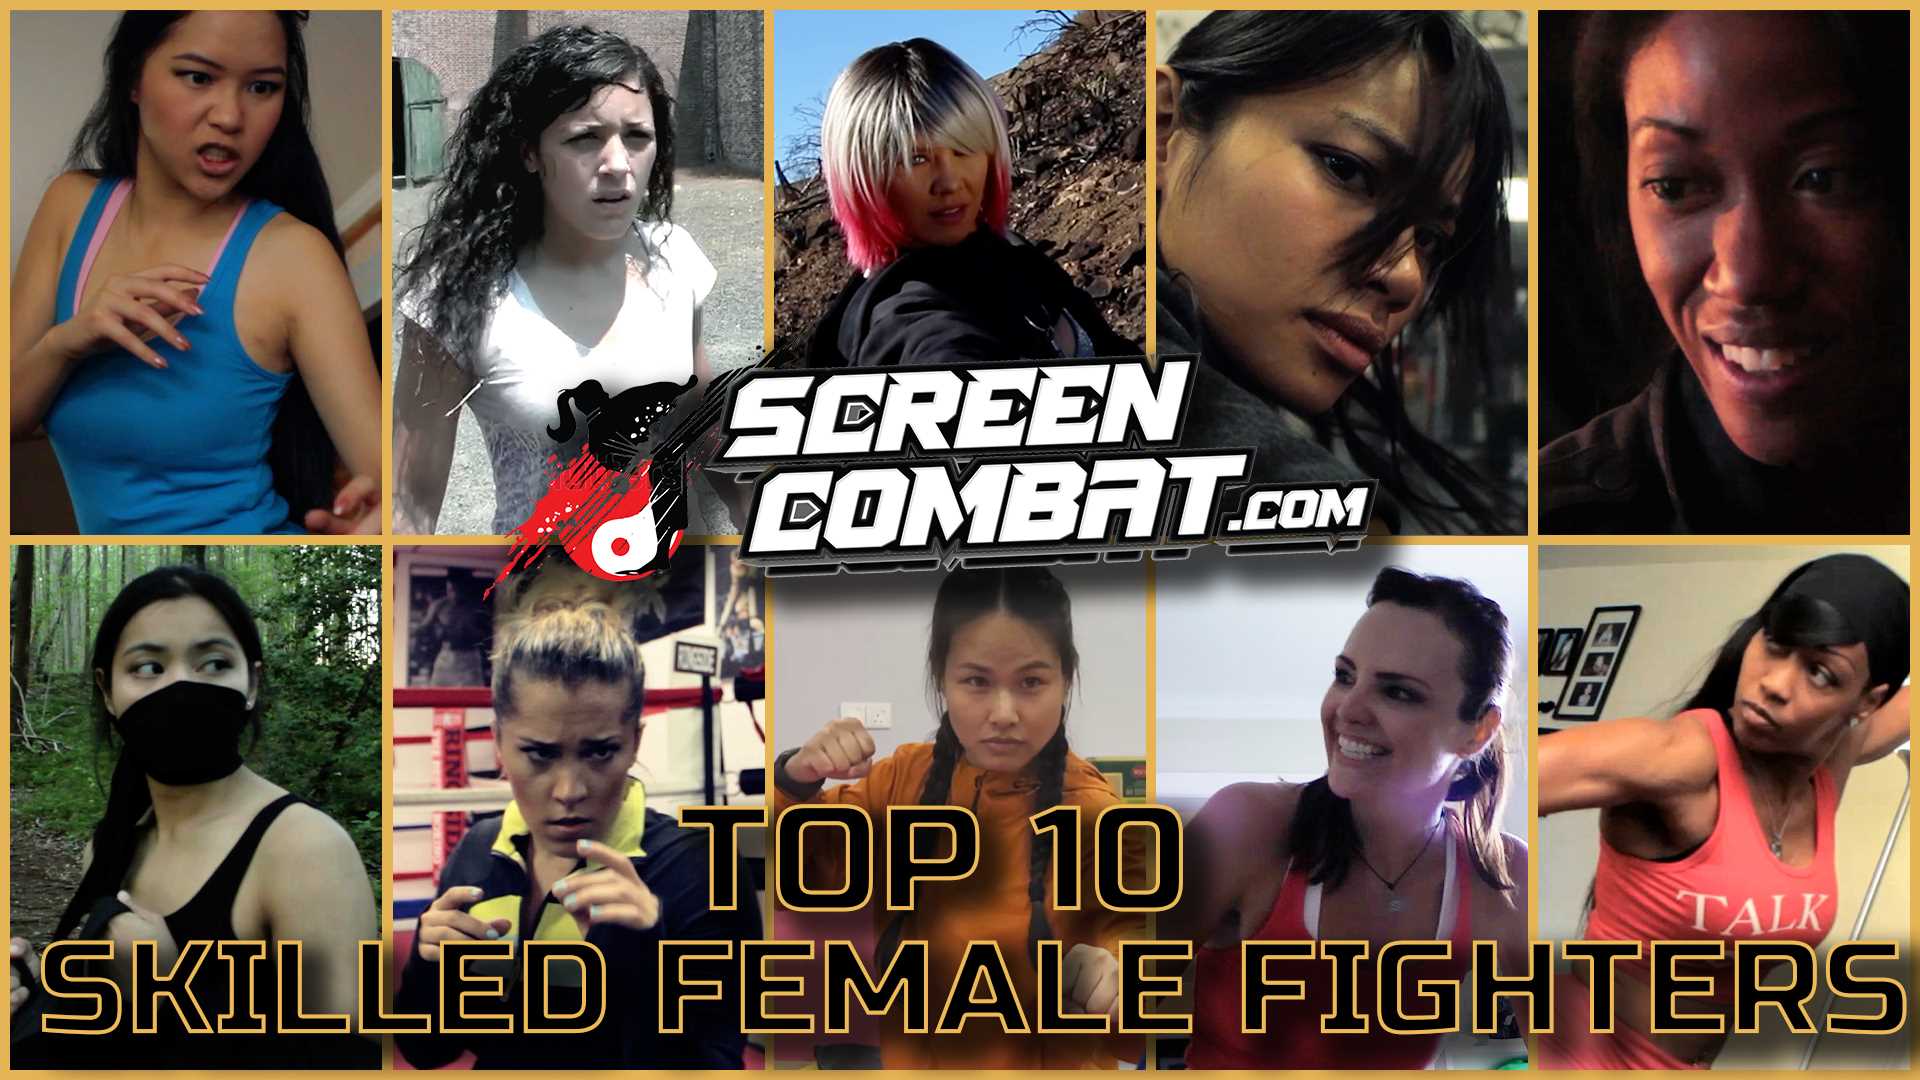 Screen Combat | TOP TEN MIXED FIGHT SCENES